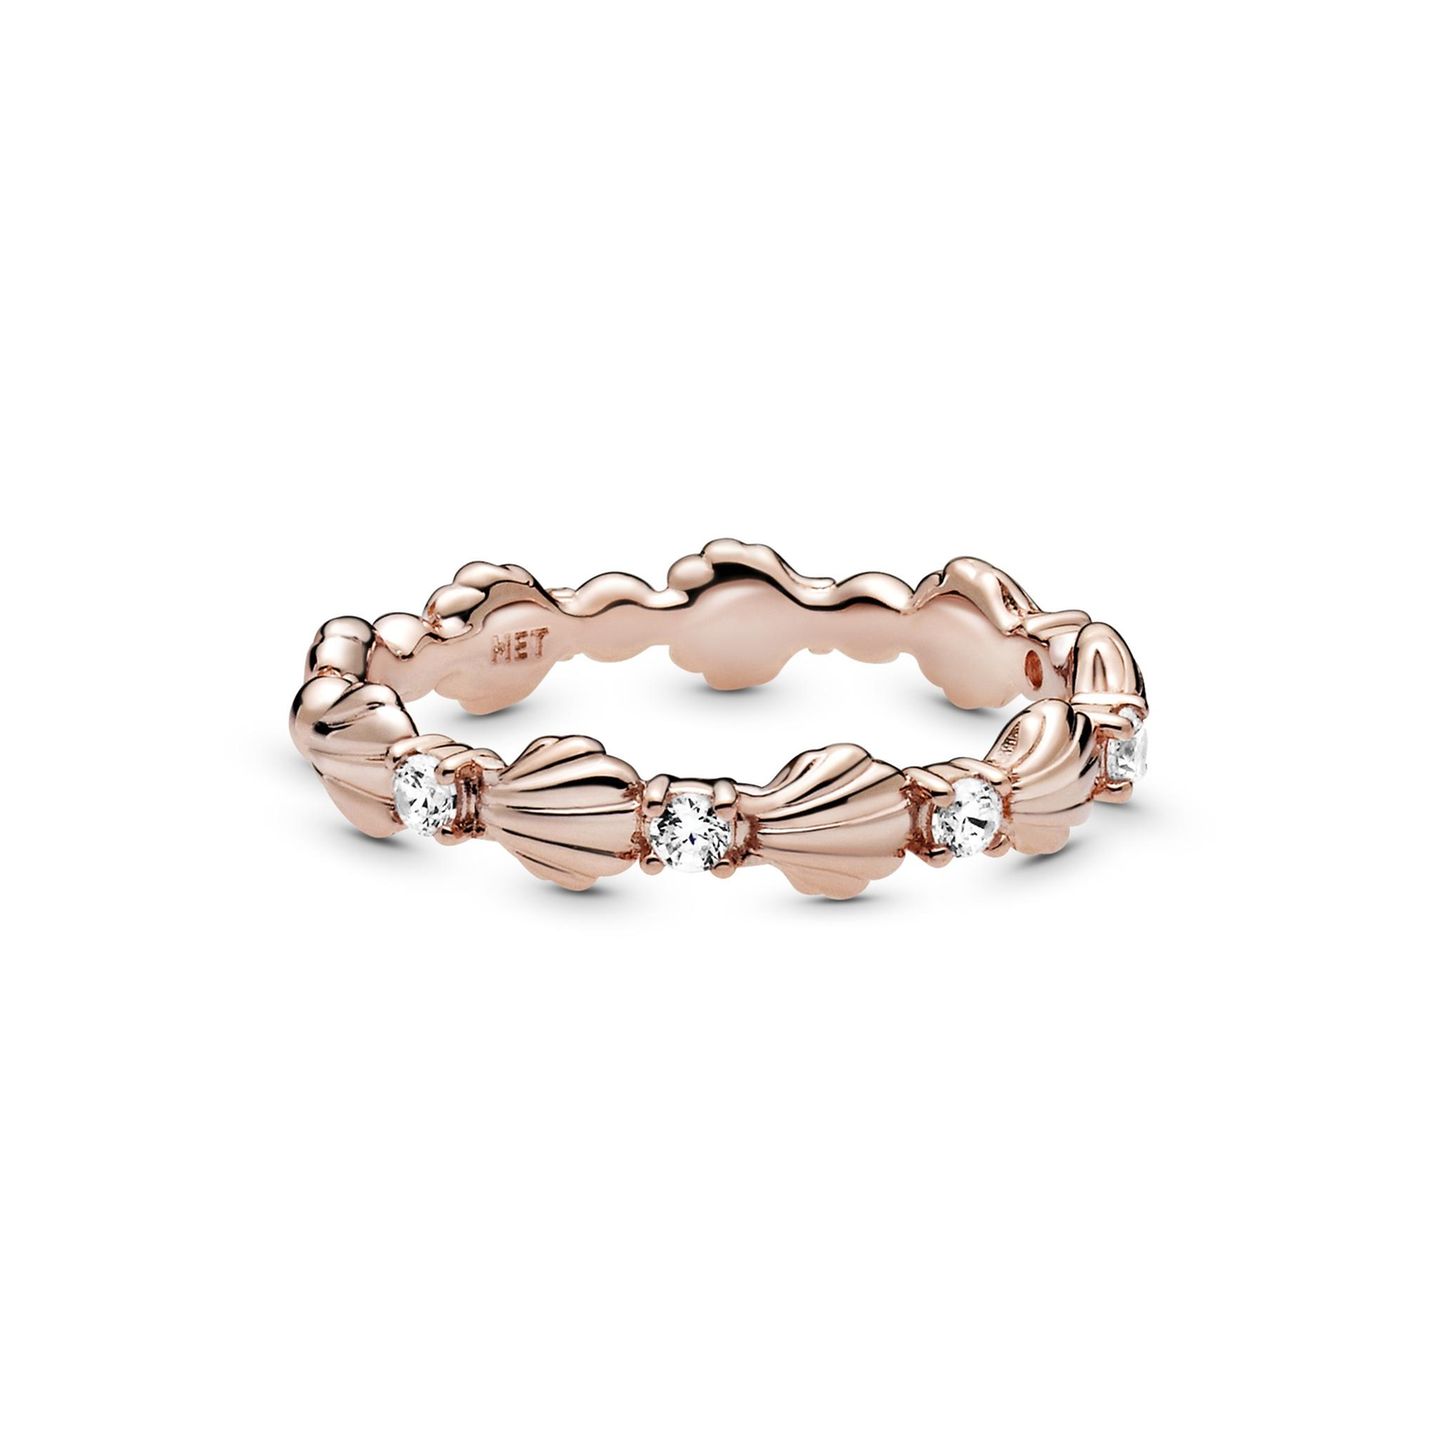 Wer es etwas subtiler und eleganter mag, greift ganz einfach zu diesem Ring in zartem Roségold. Von Pandora, ca. 50 Euro.